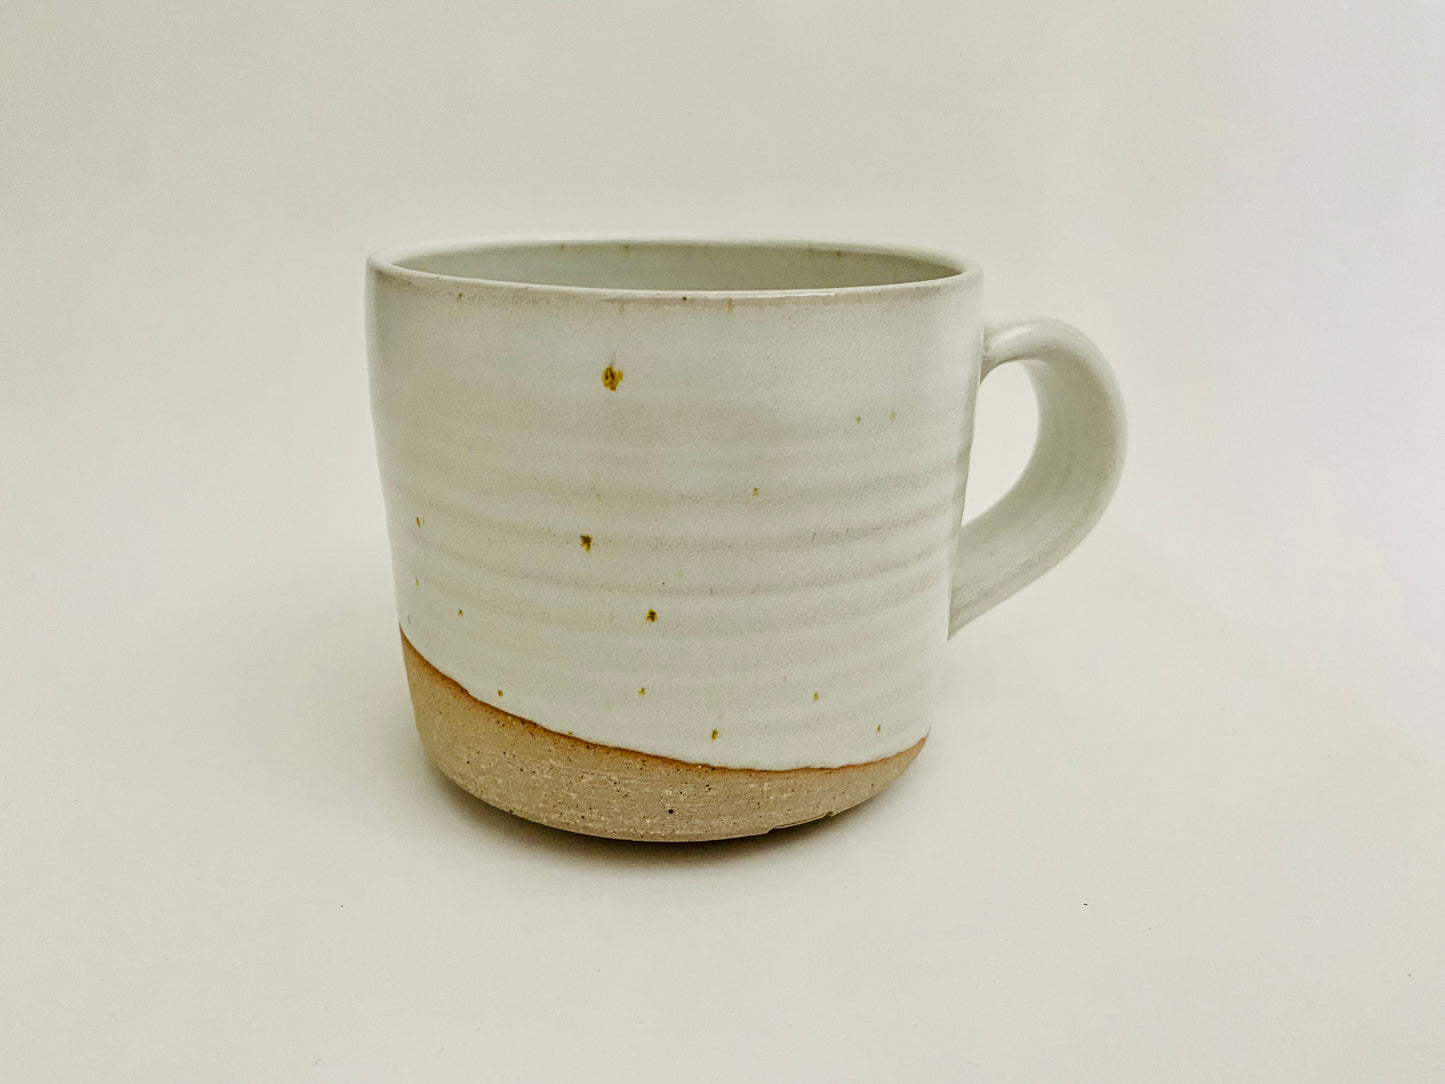 White glazed stoneware mug